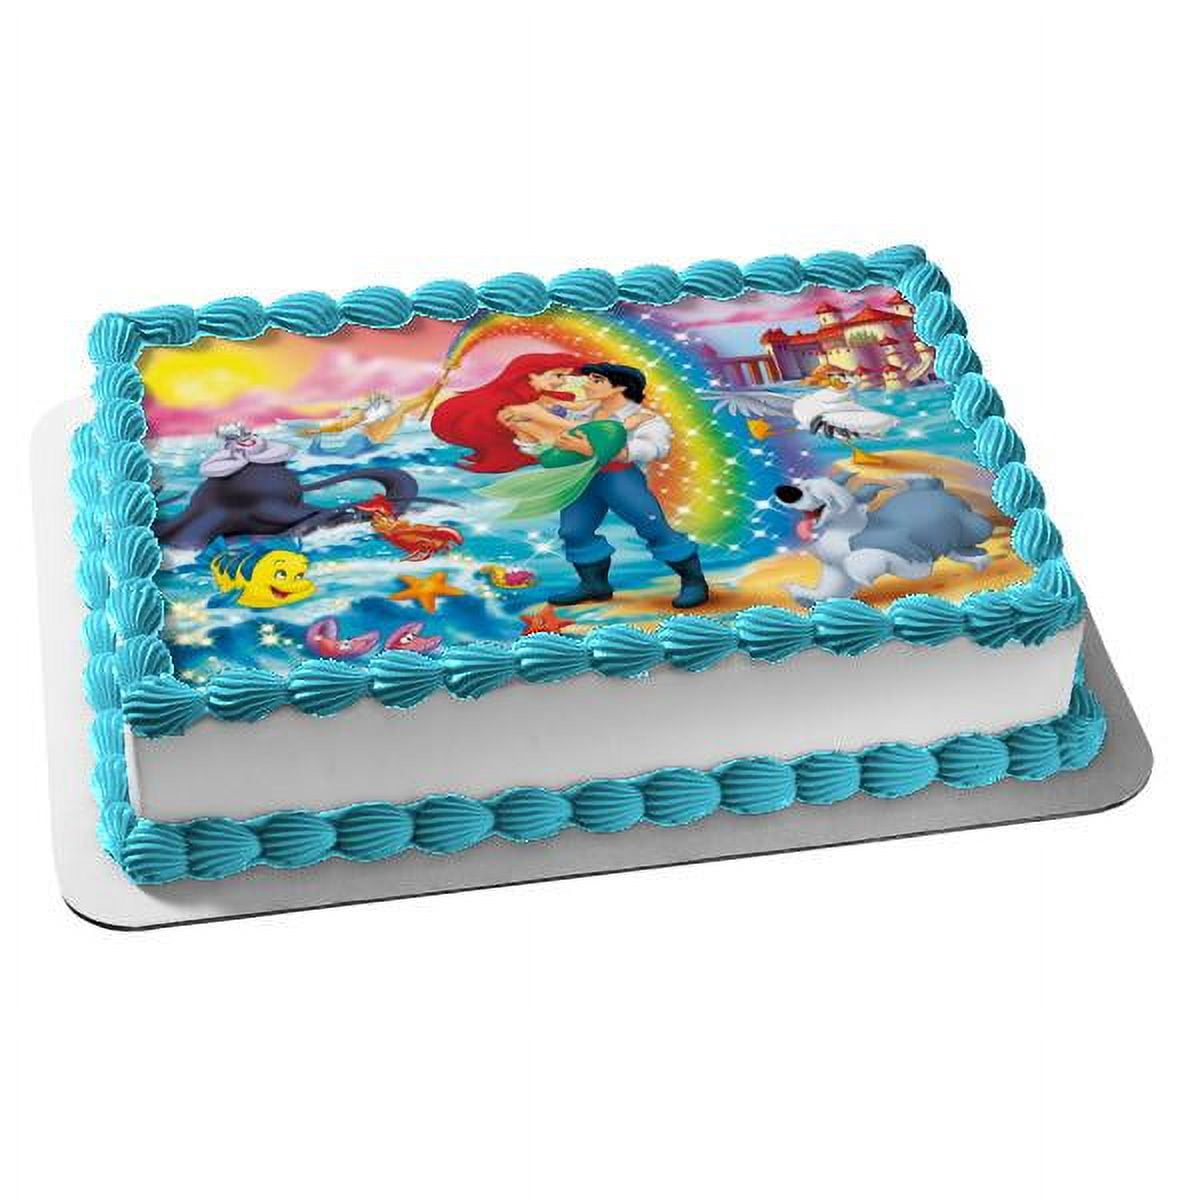 Little Mermaid Cake pops – Cocostreatla